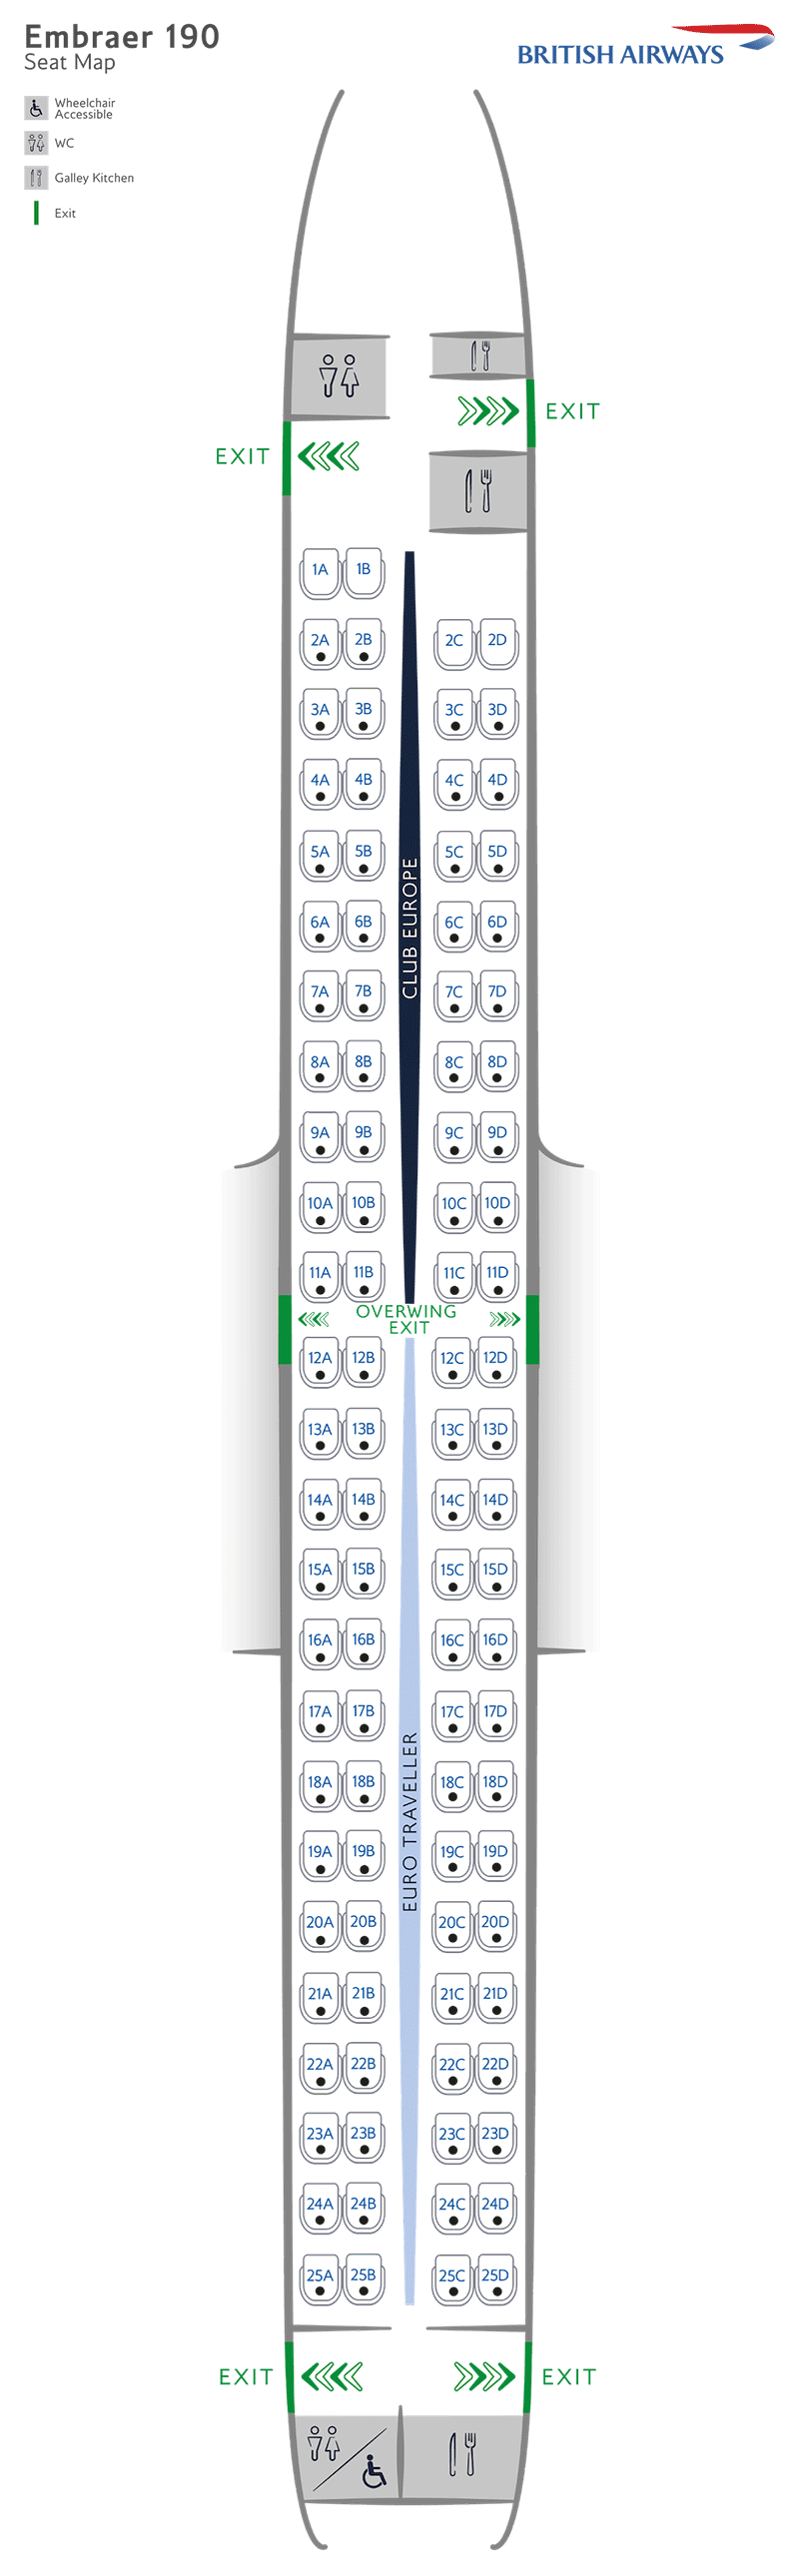 Configurazione dei posti Embraer 190